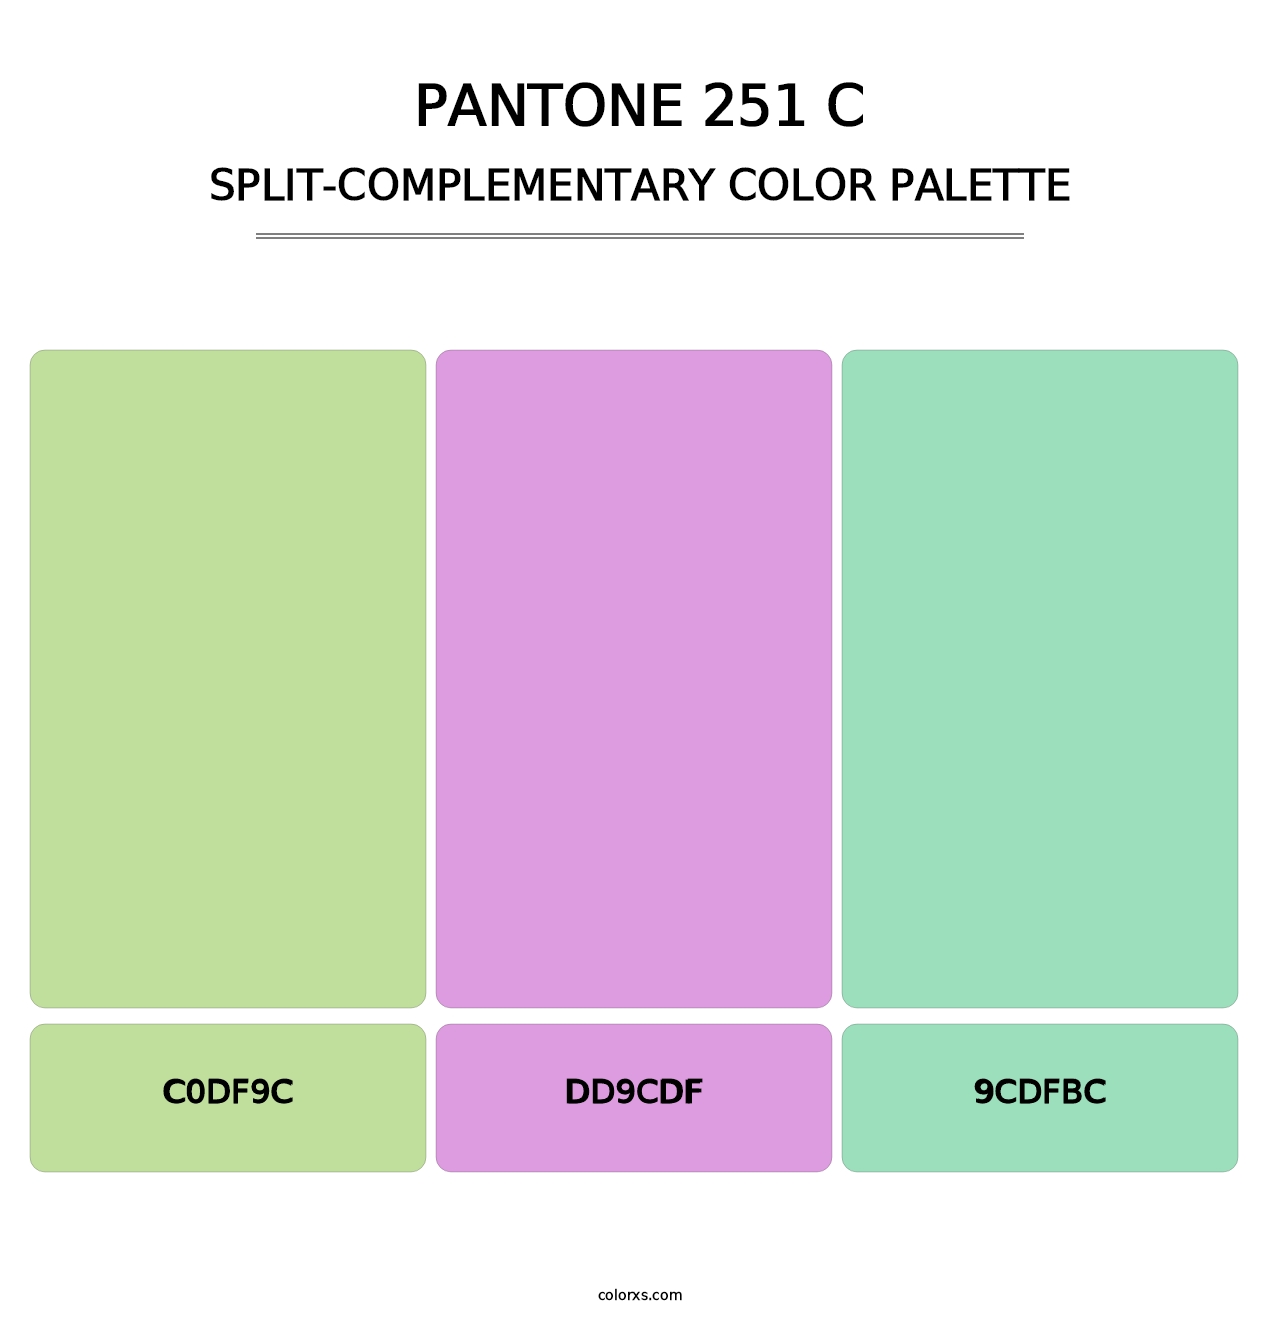 PANTONE 251 C - Split-Complementary Color Palette